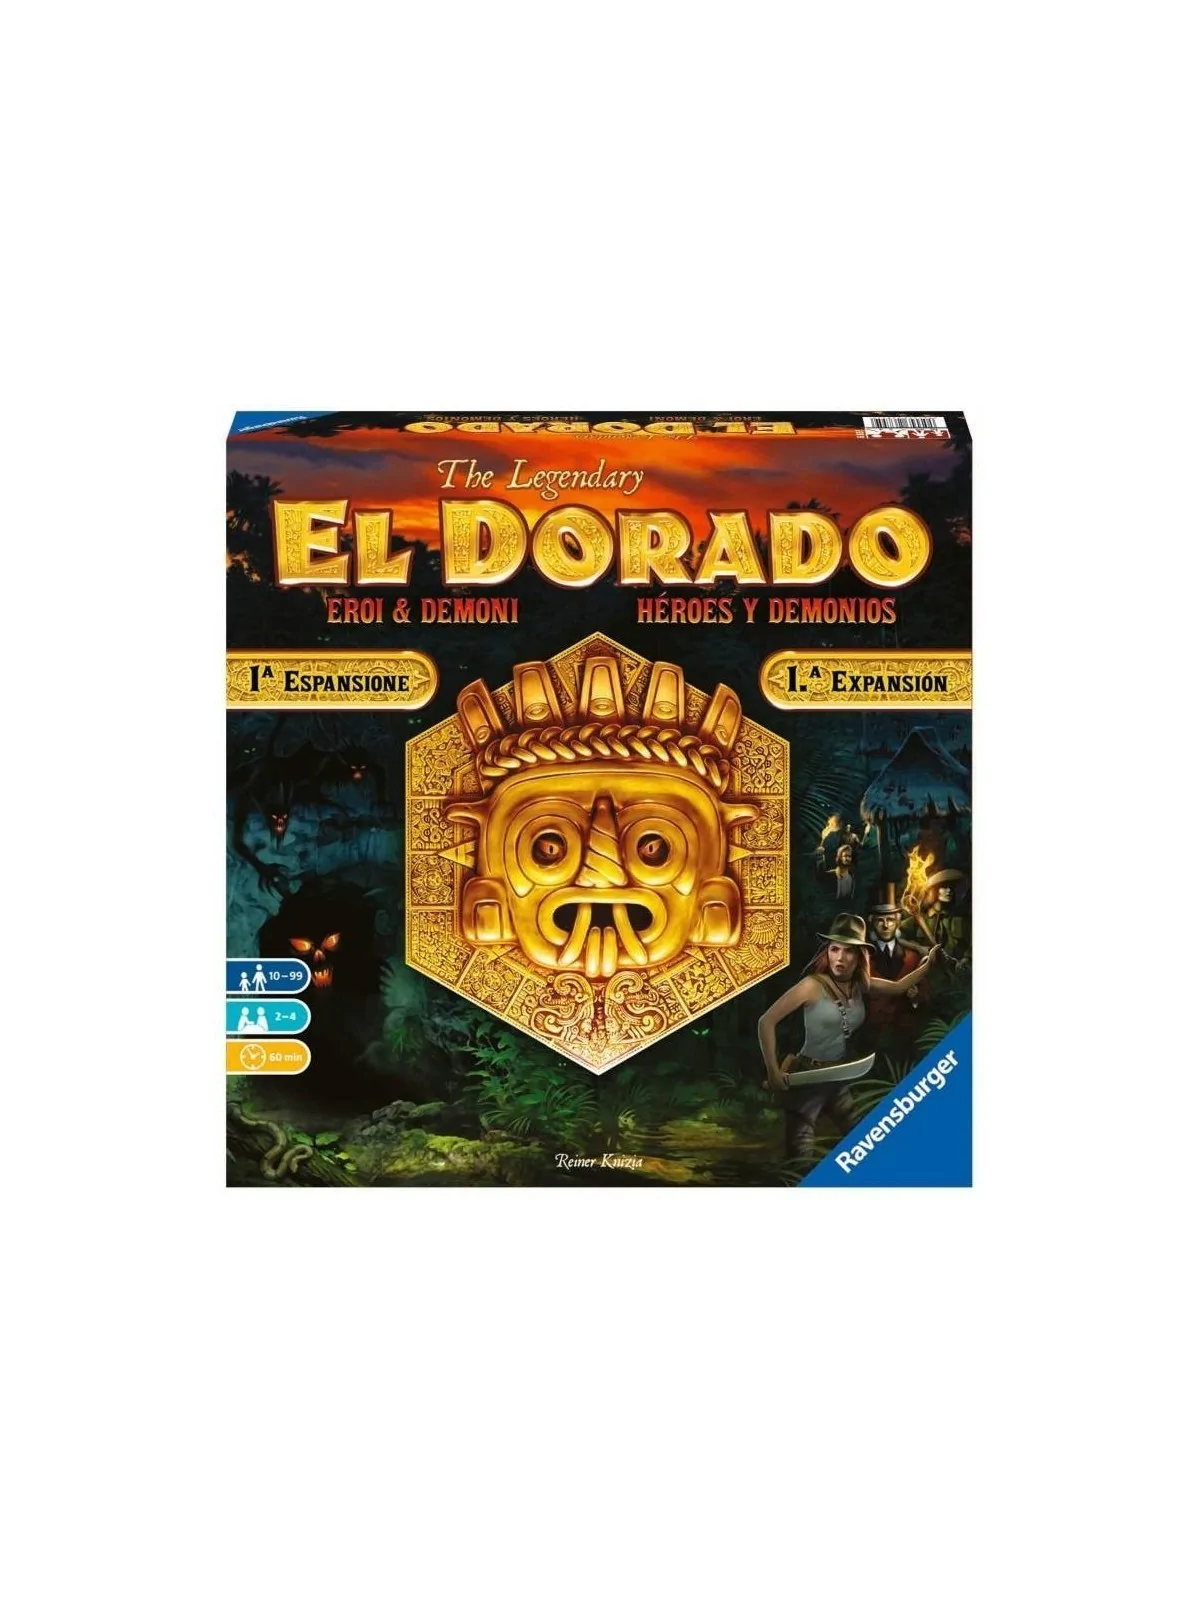 Comprar El Dorado: Héroes y Demonios barato al mejor precio 35,99 € de